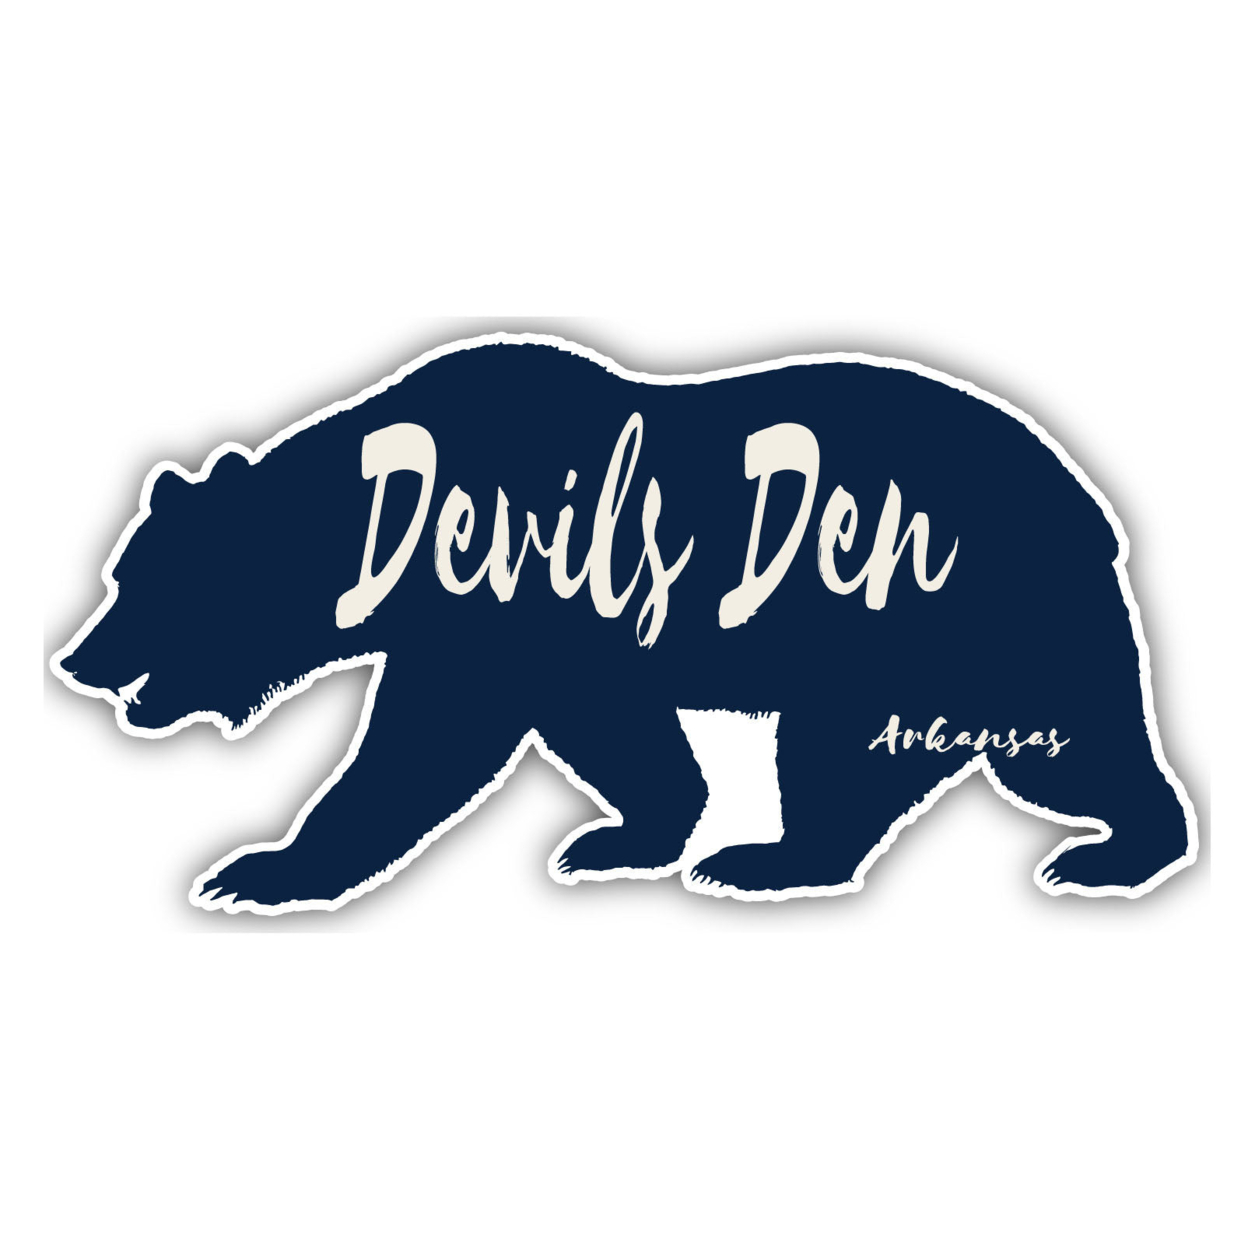 Devils Den Arkansas Souvenir Decorative Stickers (Choose Theme And Size) - Single Unit, 12-Inch, Great Outdoors